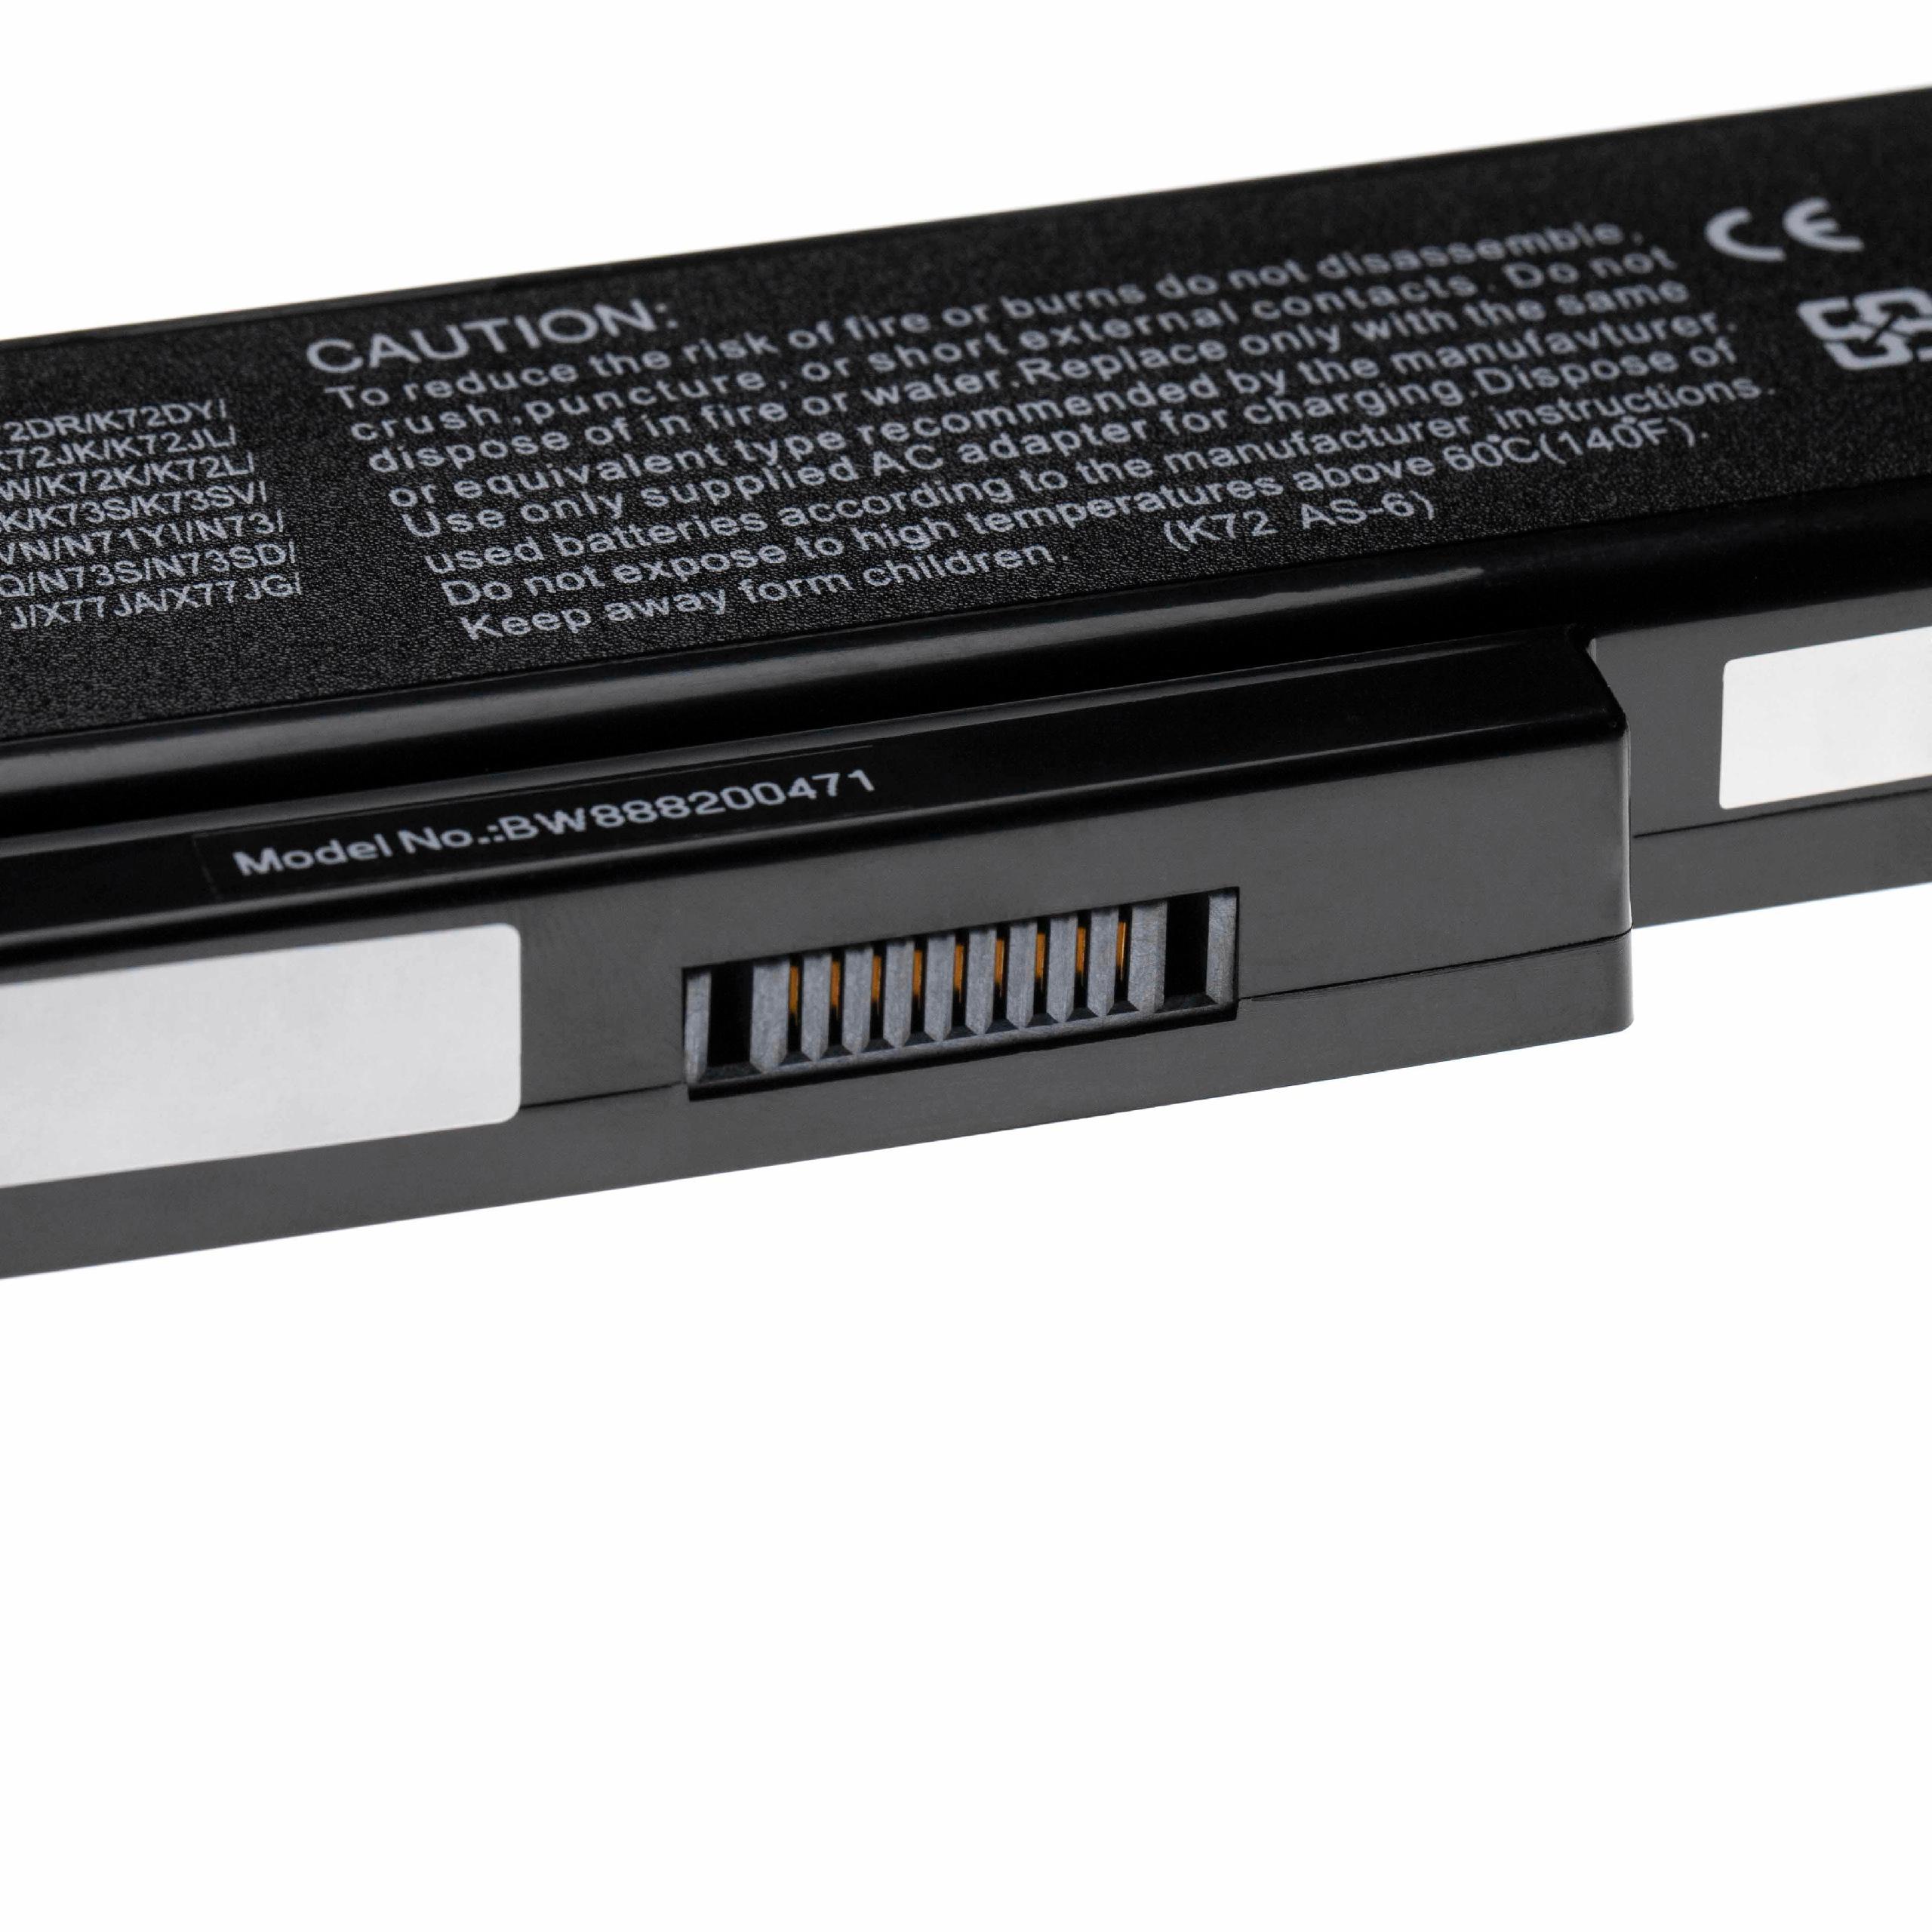 Notebook Battery Replacement for Asus 70-NX01B1000Z, 70-NXH1B1000Z - 5200mAh 10.8V Li-polymer, black